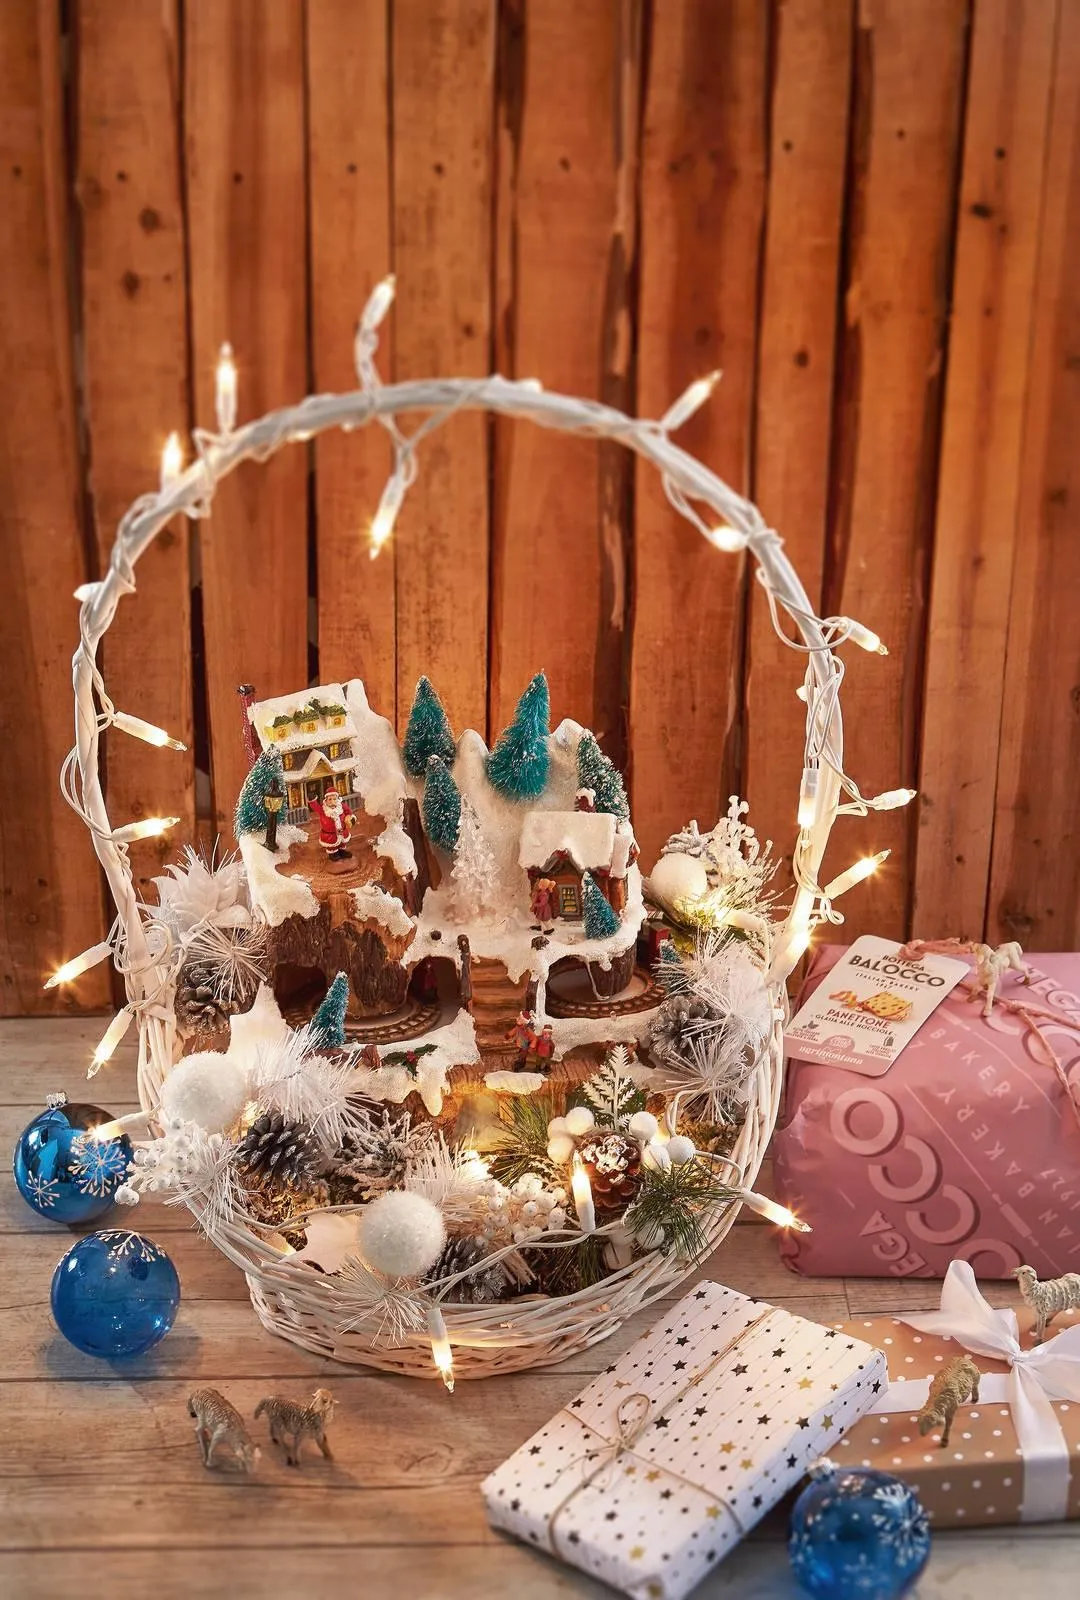 Decorazioni: villaggio di Natale e presepe nella cesta - Cose di Casa